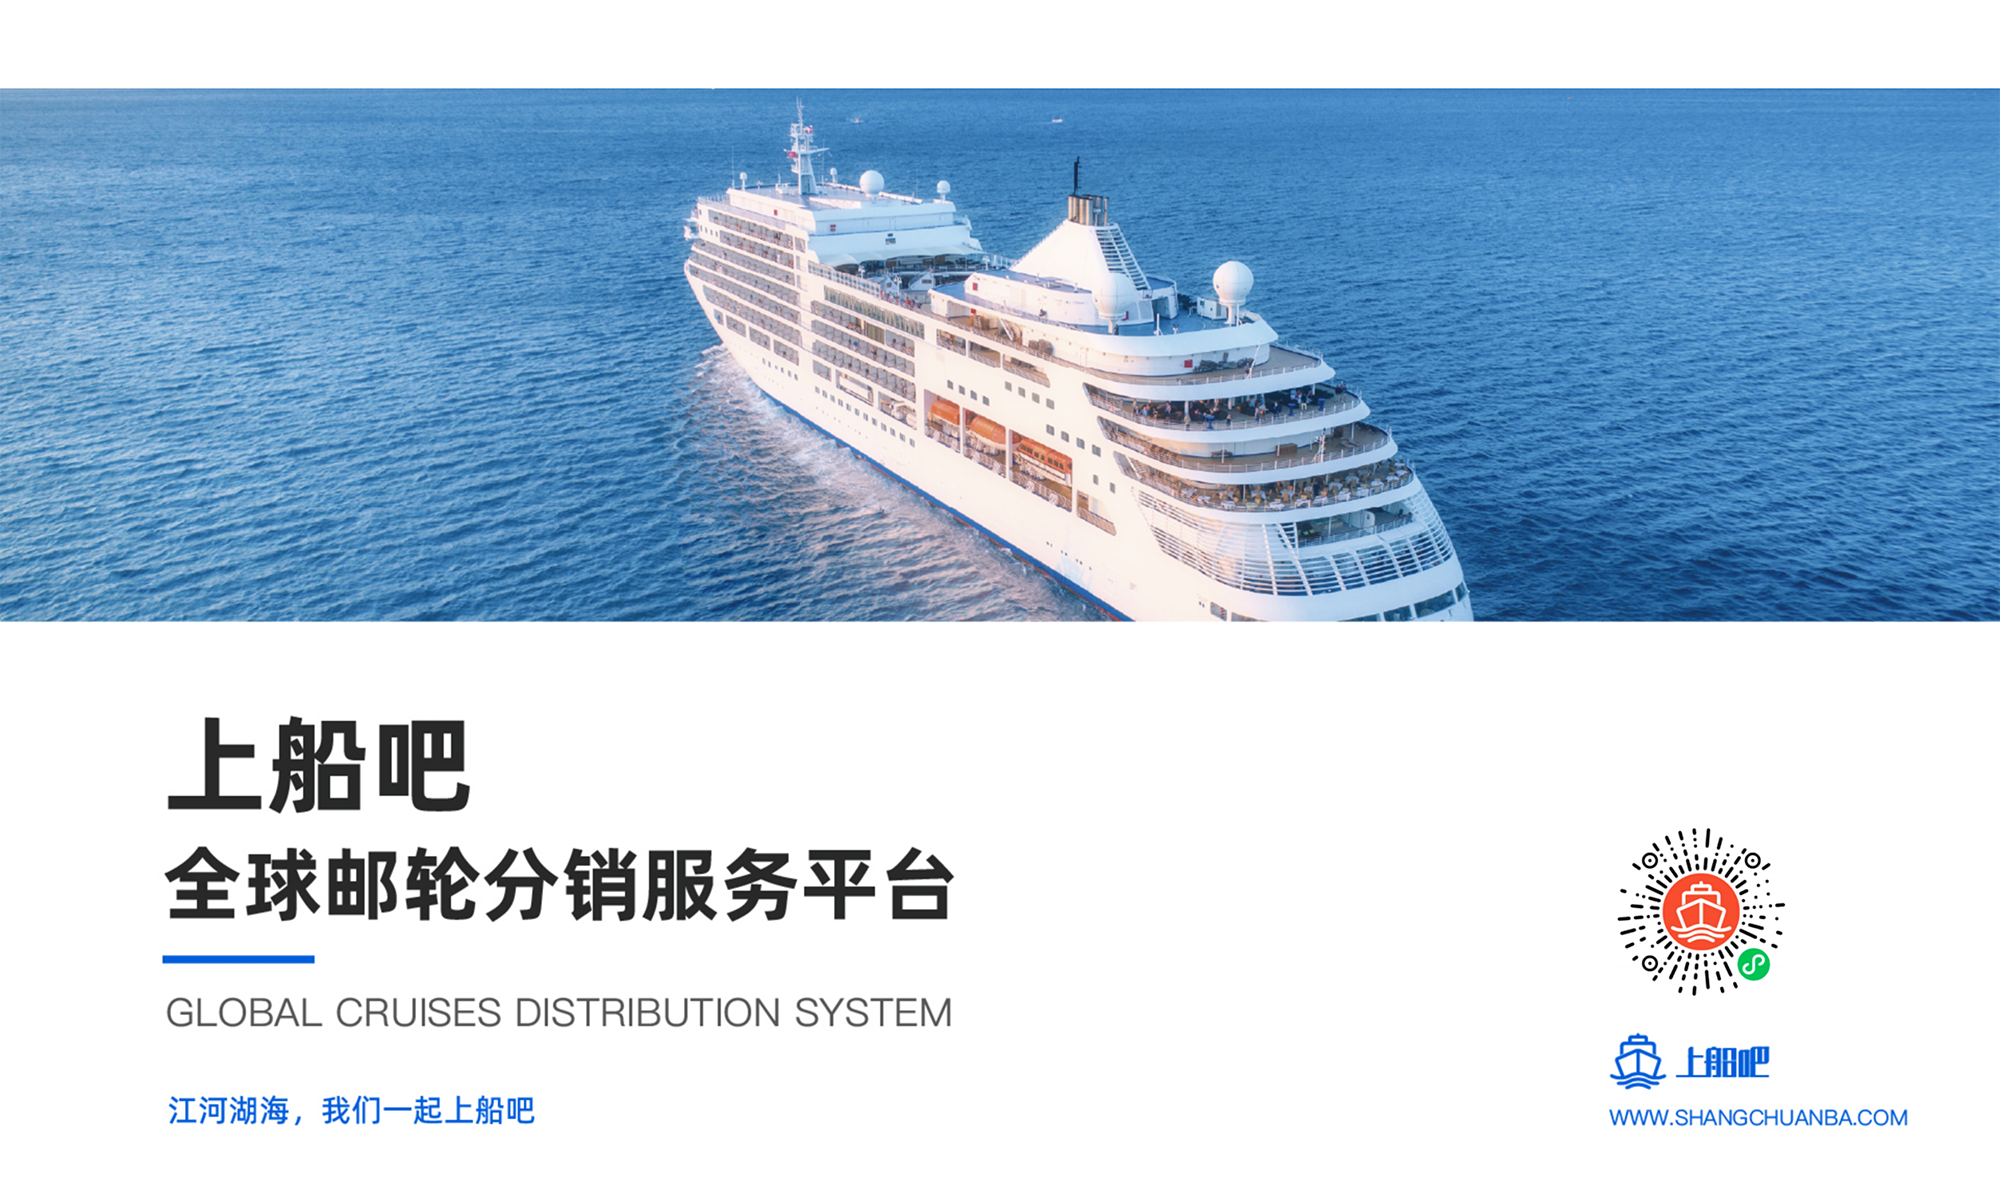 上海乐船信息科技有限公司 上船吧 — 全球邮轮分销服务平台